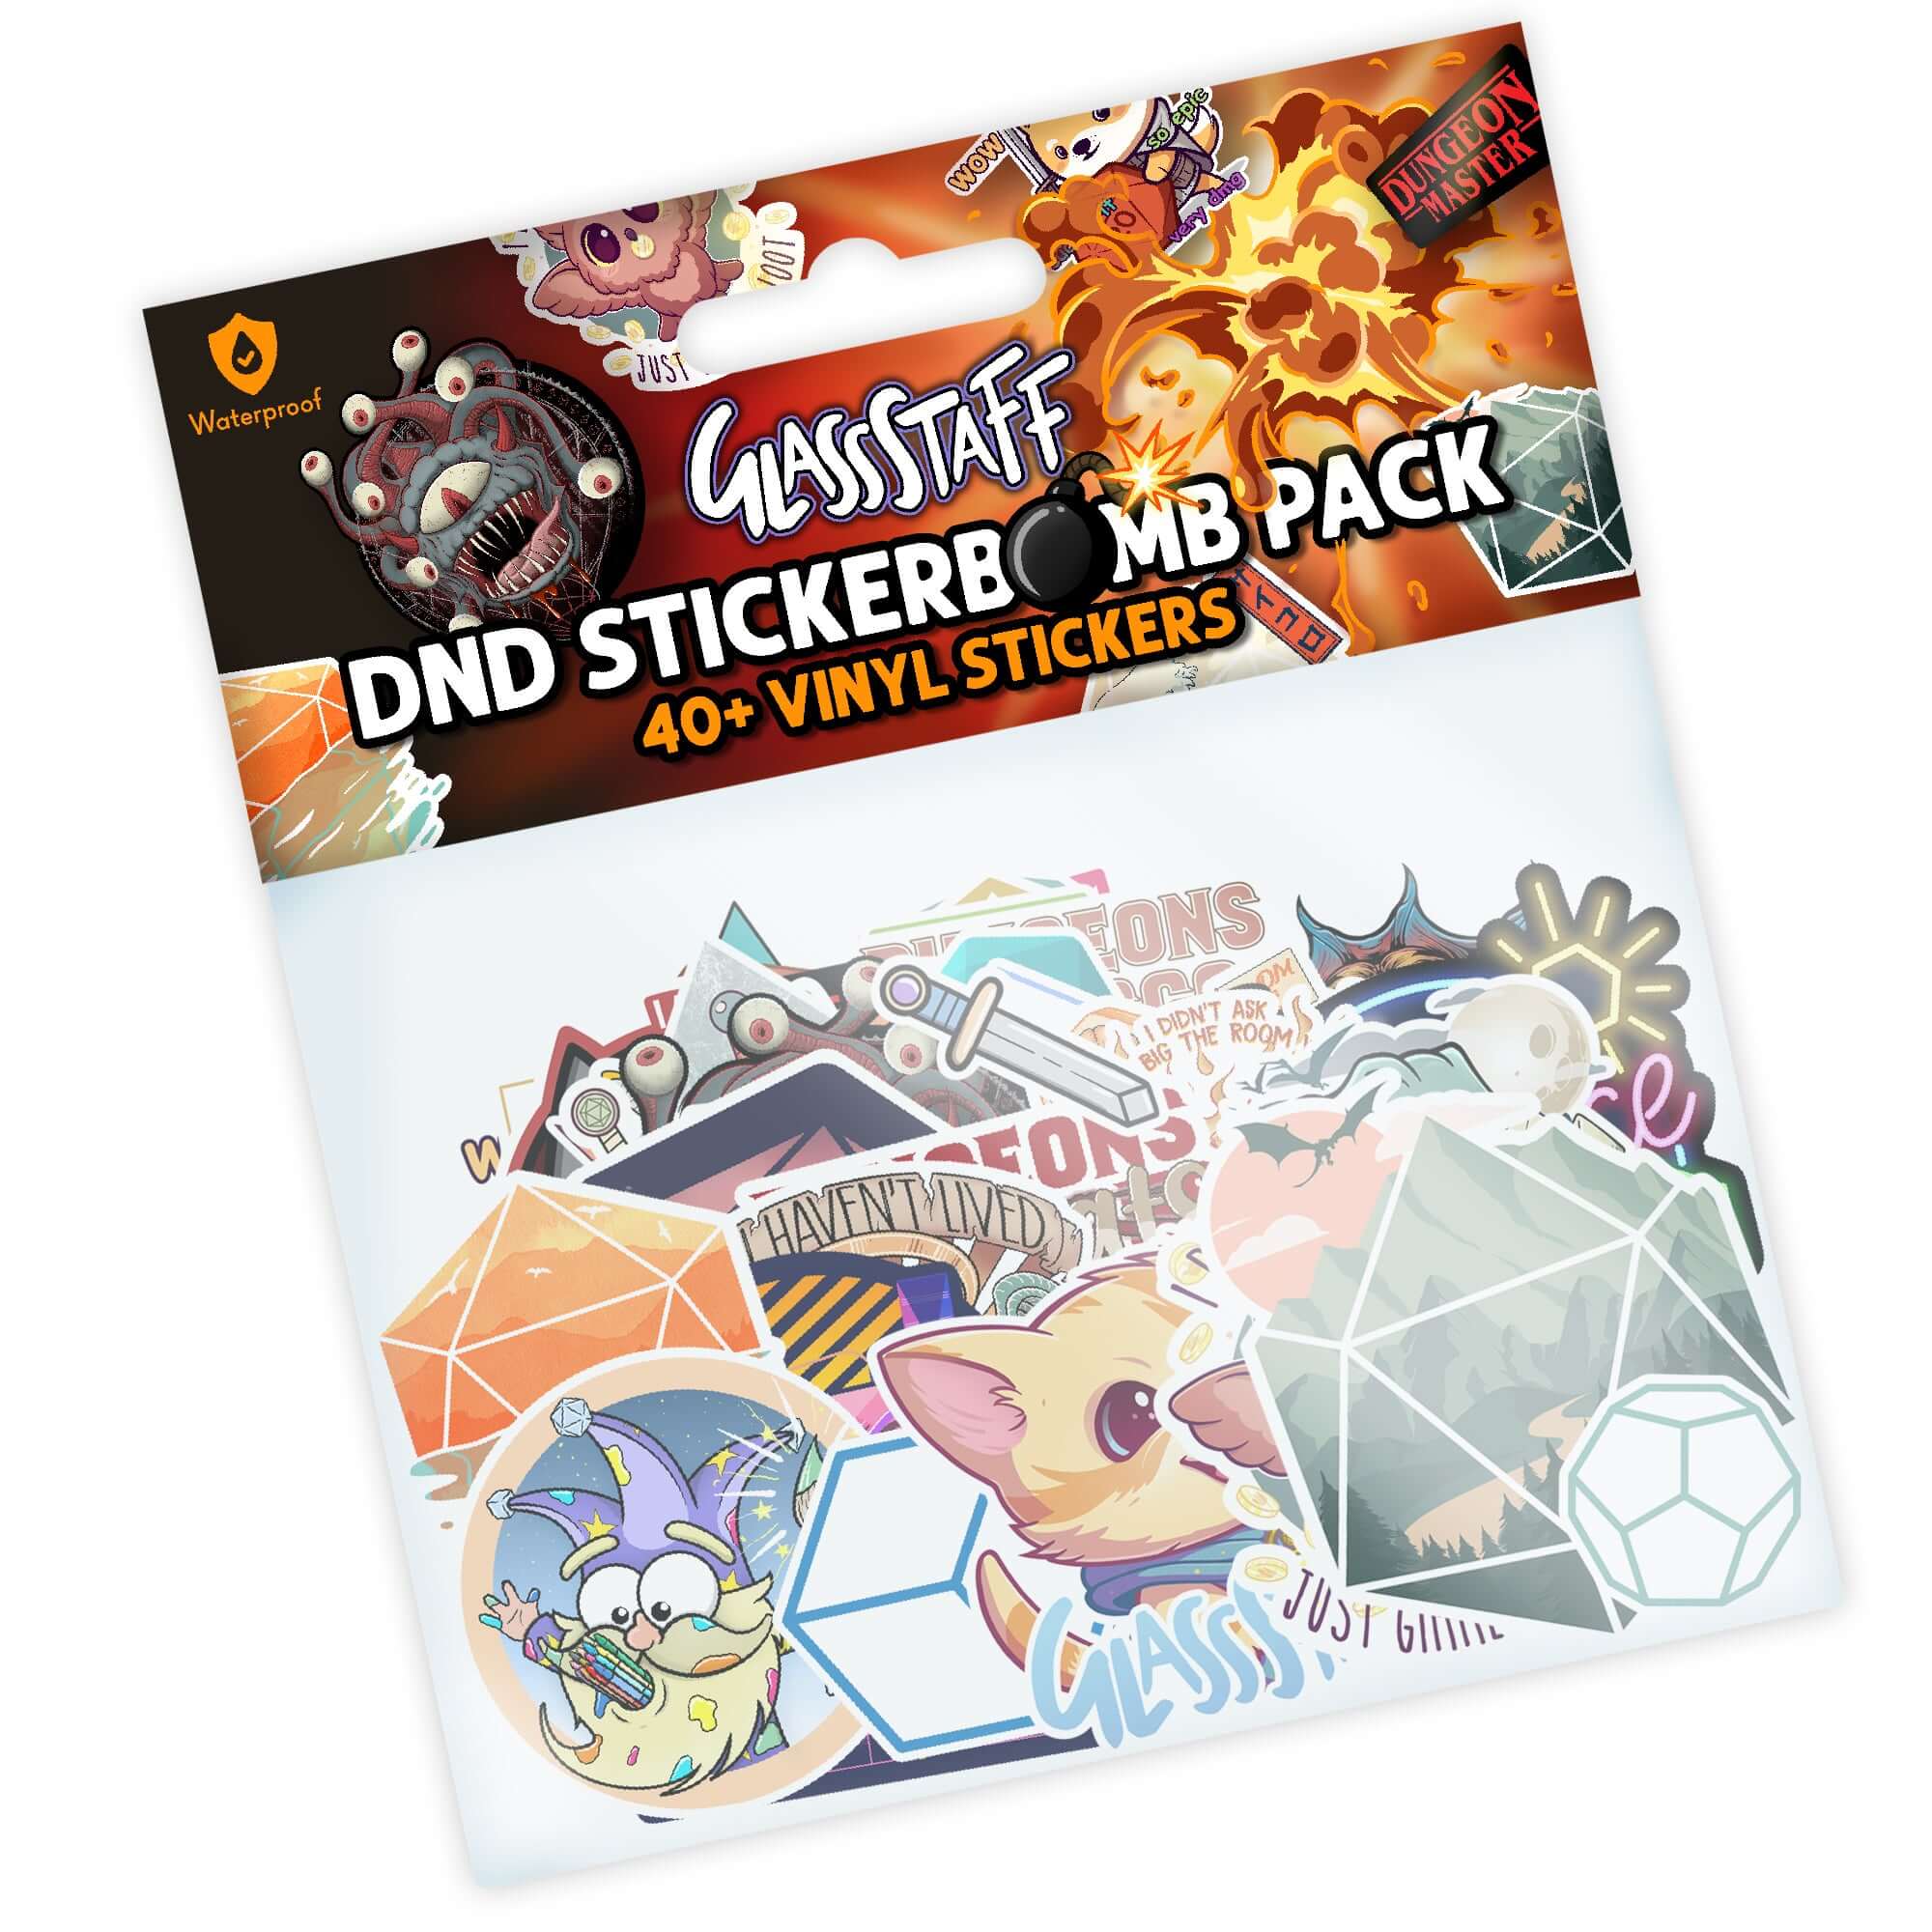 Glassstaff StickerBomb Pack - D&D / TTRPG Special Stickers - Glassstaff